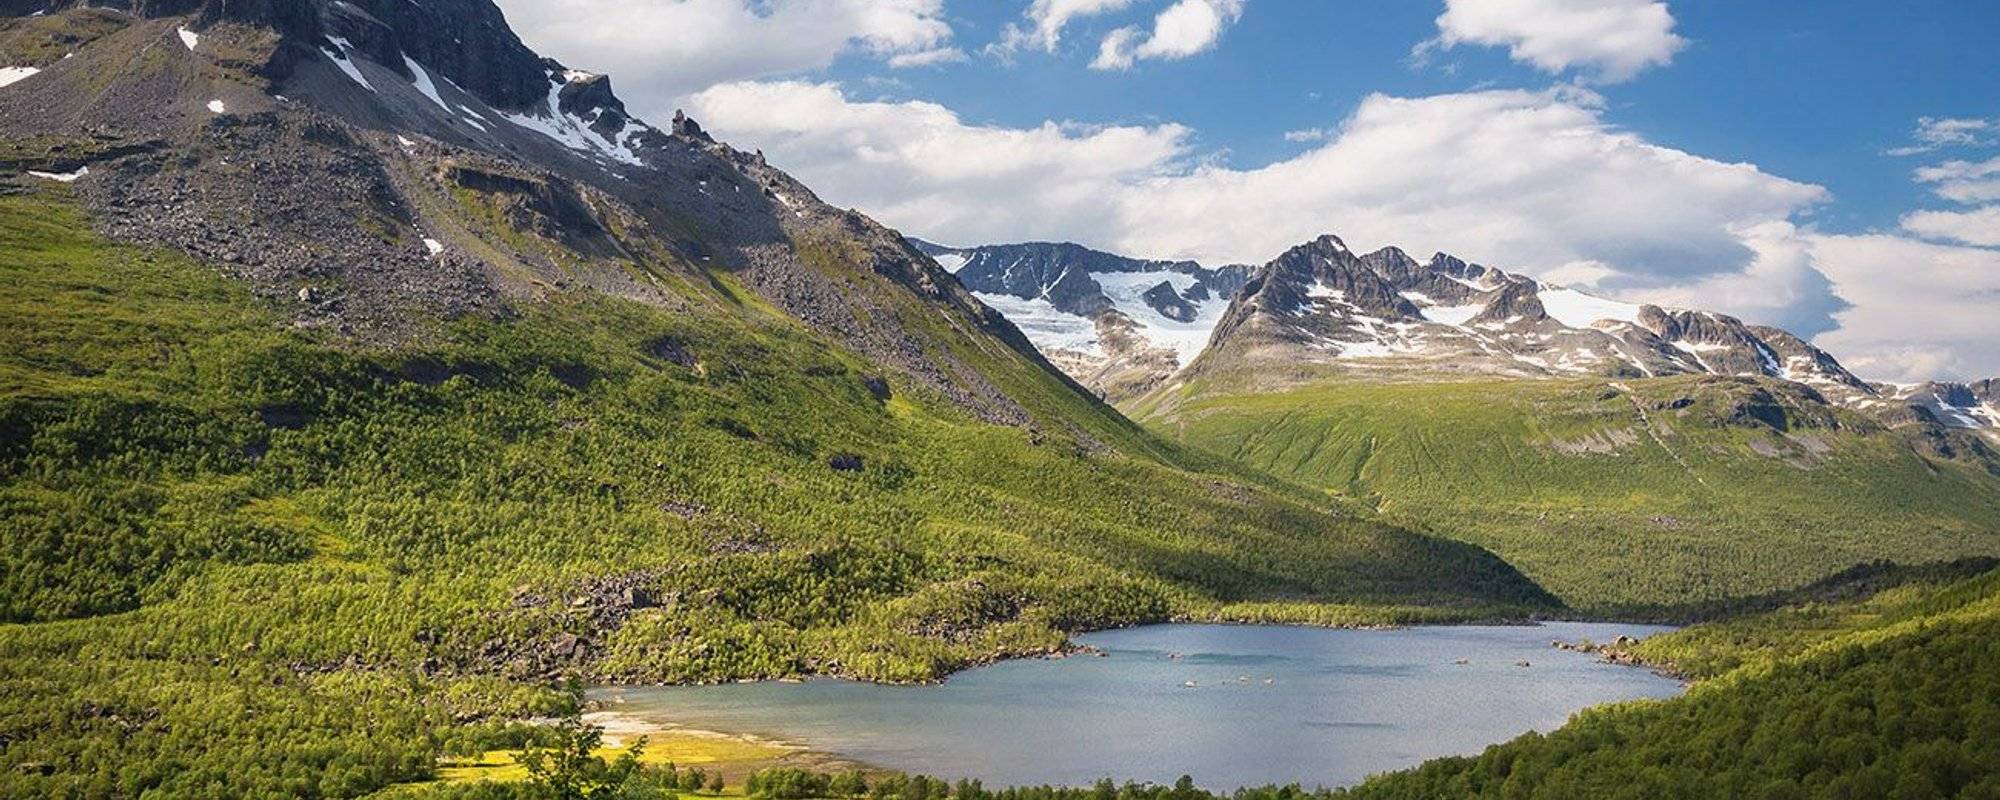 Travel Norway #11 - Innerdalen - First Summer trip to Trollheimen National Park - Day 2